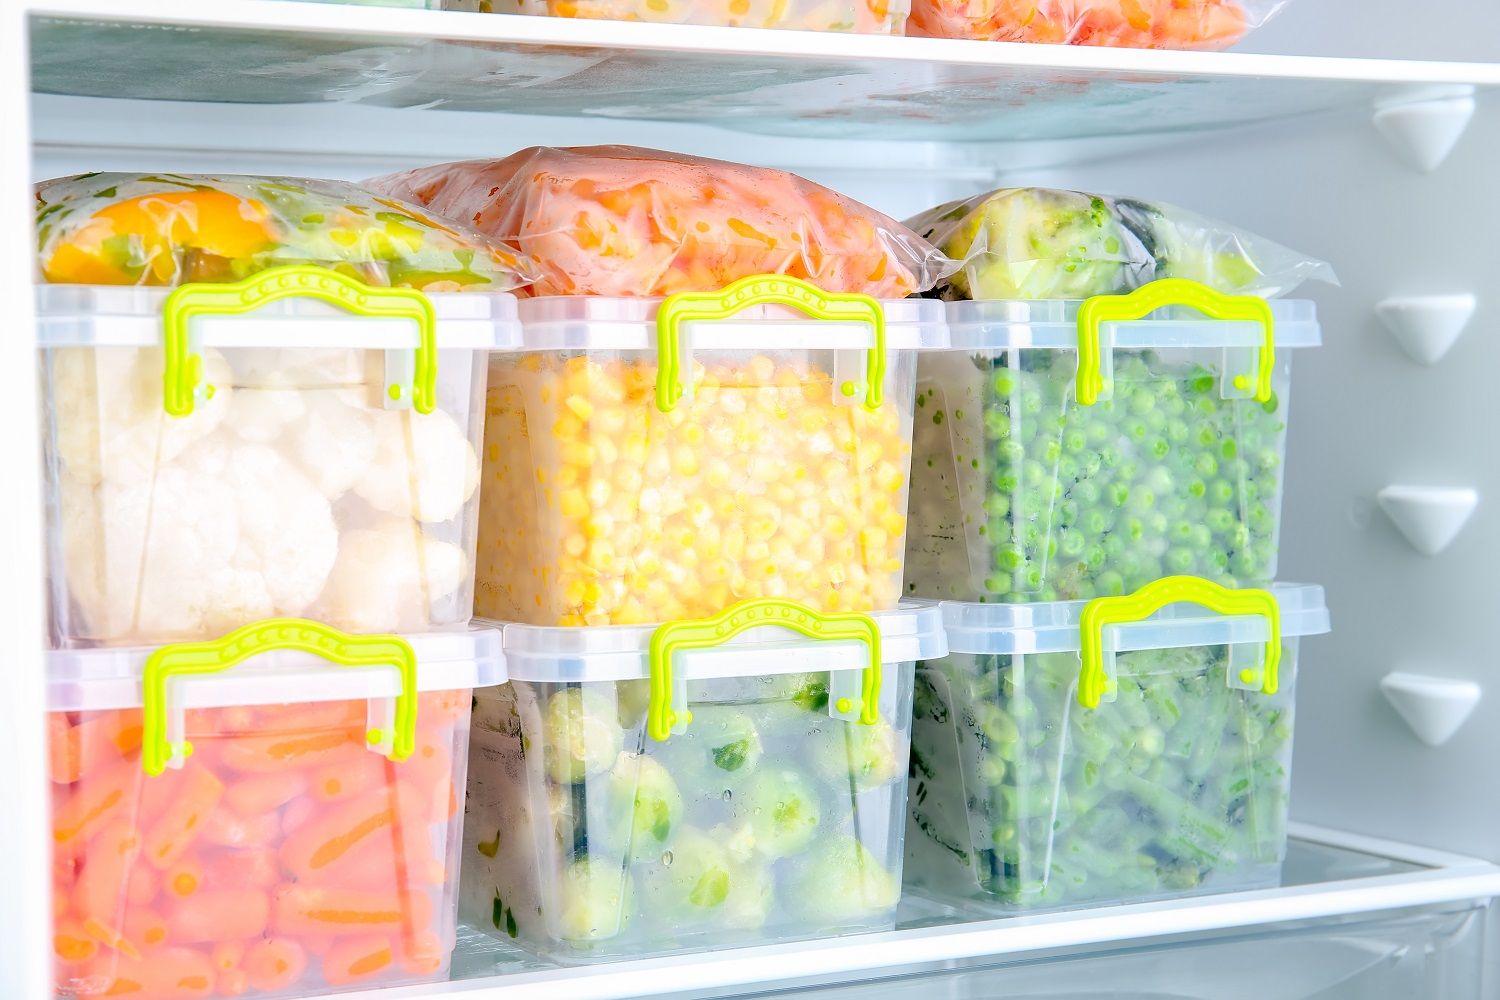 冰箱冷冻食物可以一直存放吗？会有营养和安全问题吗？